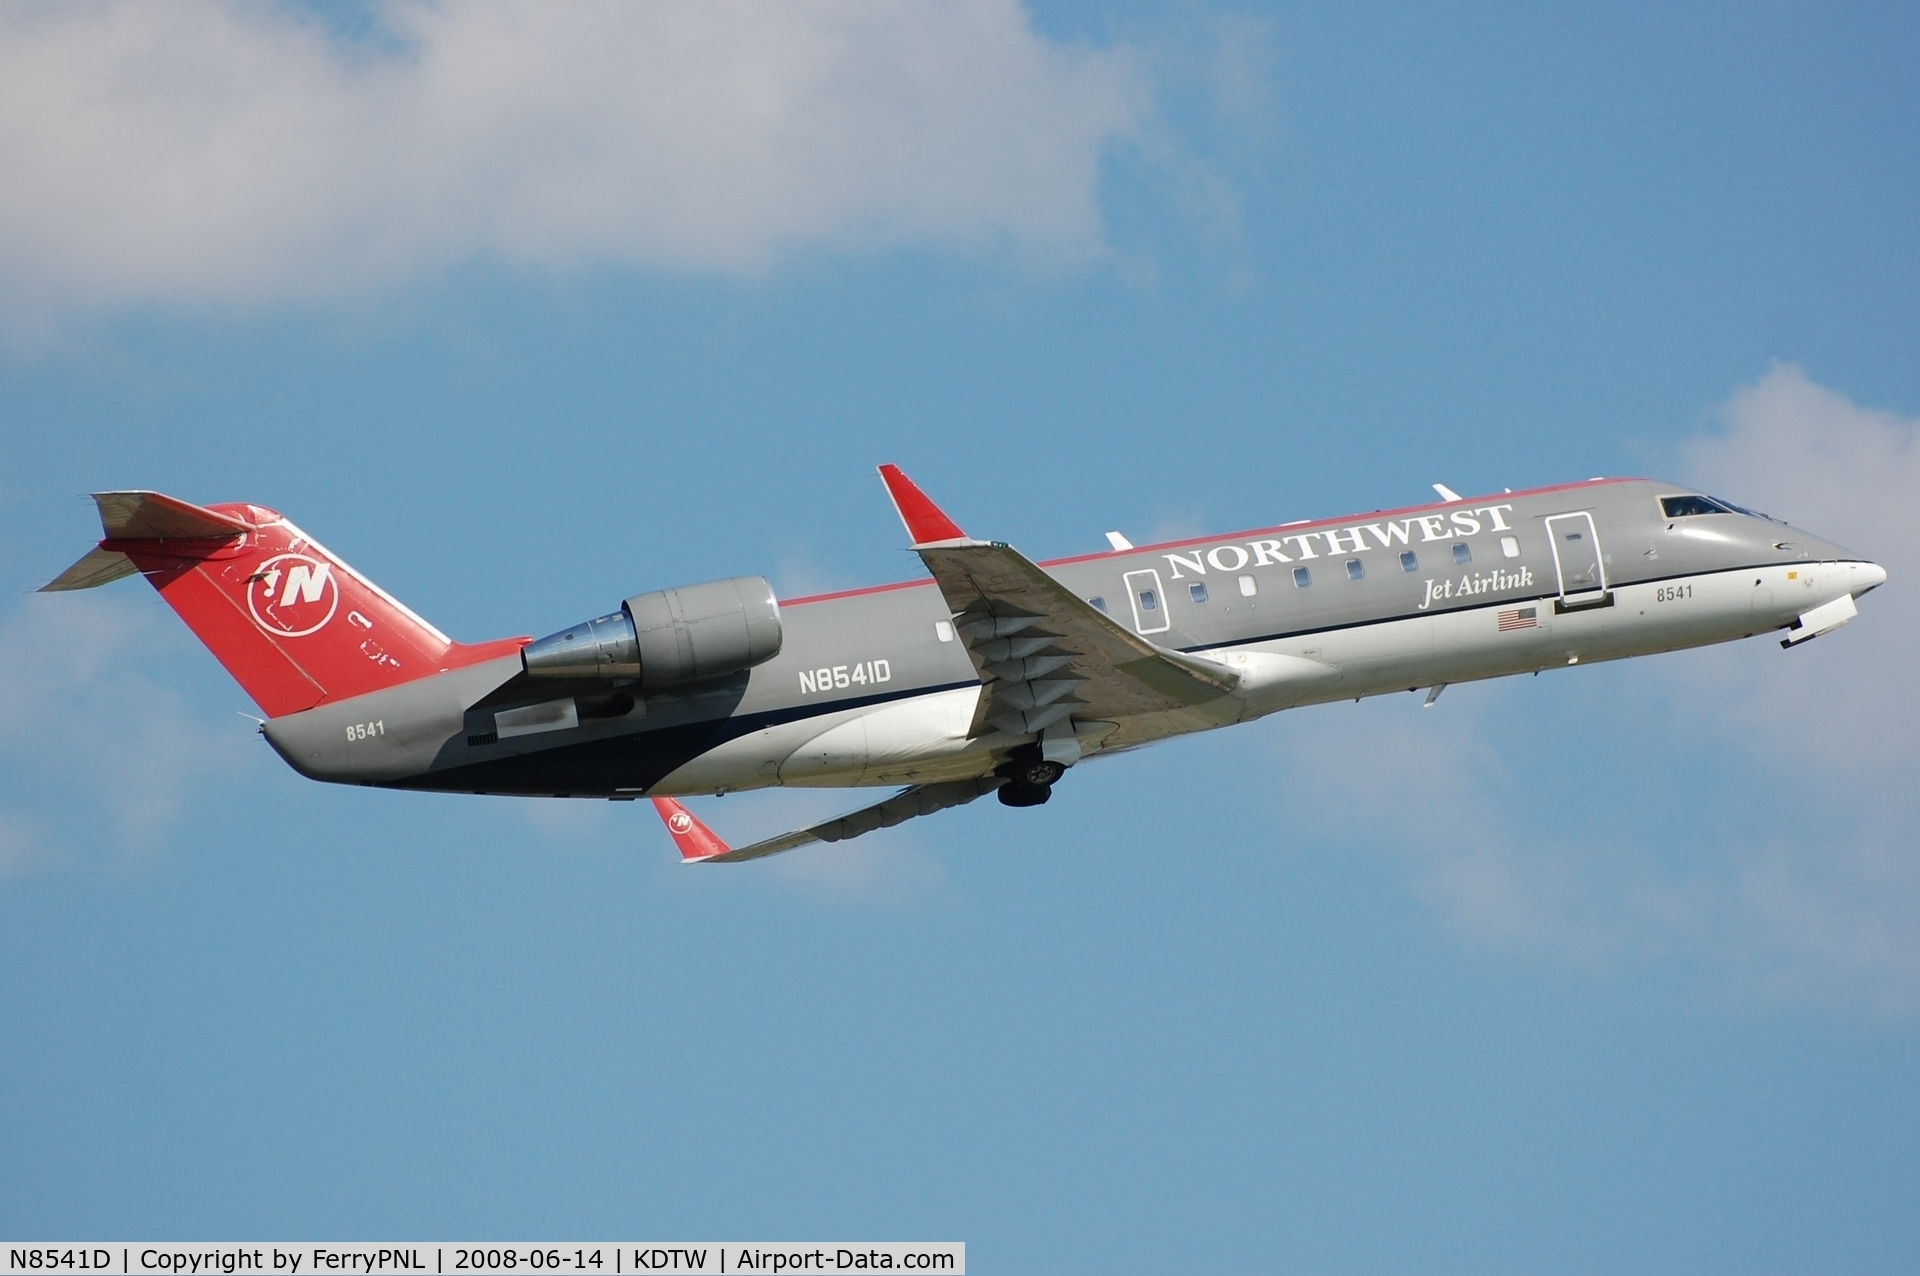 N8541D, 2001 Bombardier CRJ-200LR (CL-600-2B19) C/N 7541, Departure of NWA Airlink CL200